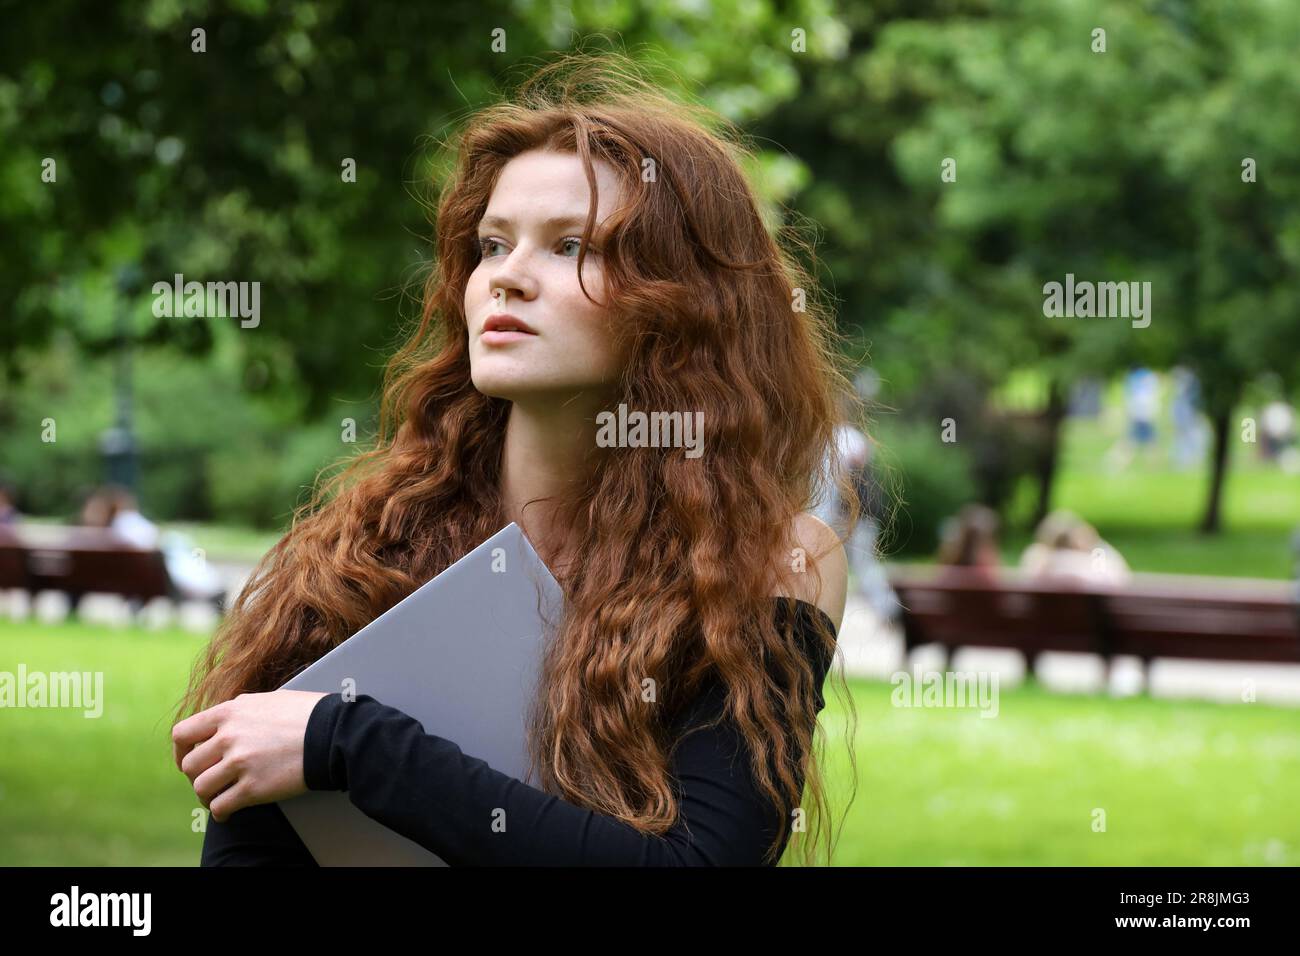 Inspirierendes Mädchen mit langen roten Haaren und Sommersprossen, das im Sommerpark mit einem Laptop in der Hand steht. Lernen und Kreativität in der Natur Stockfoto